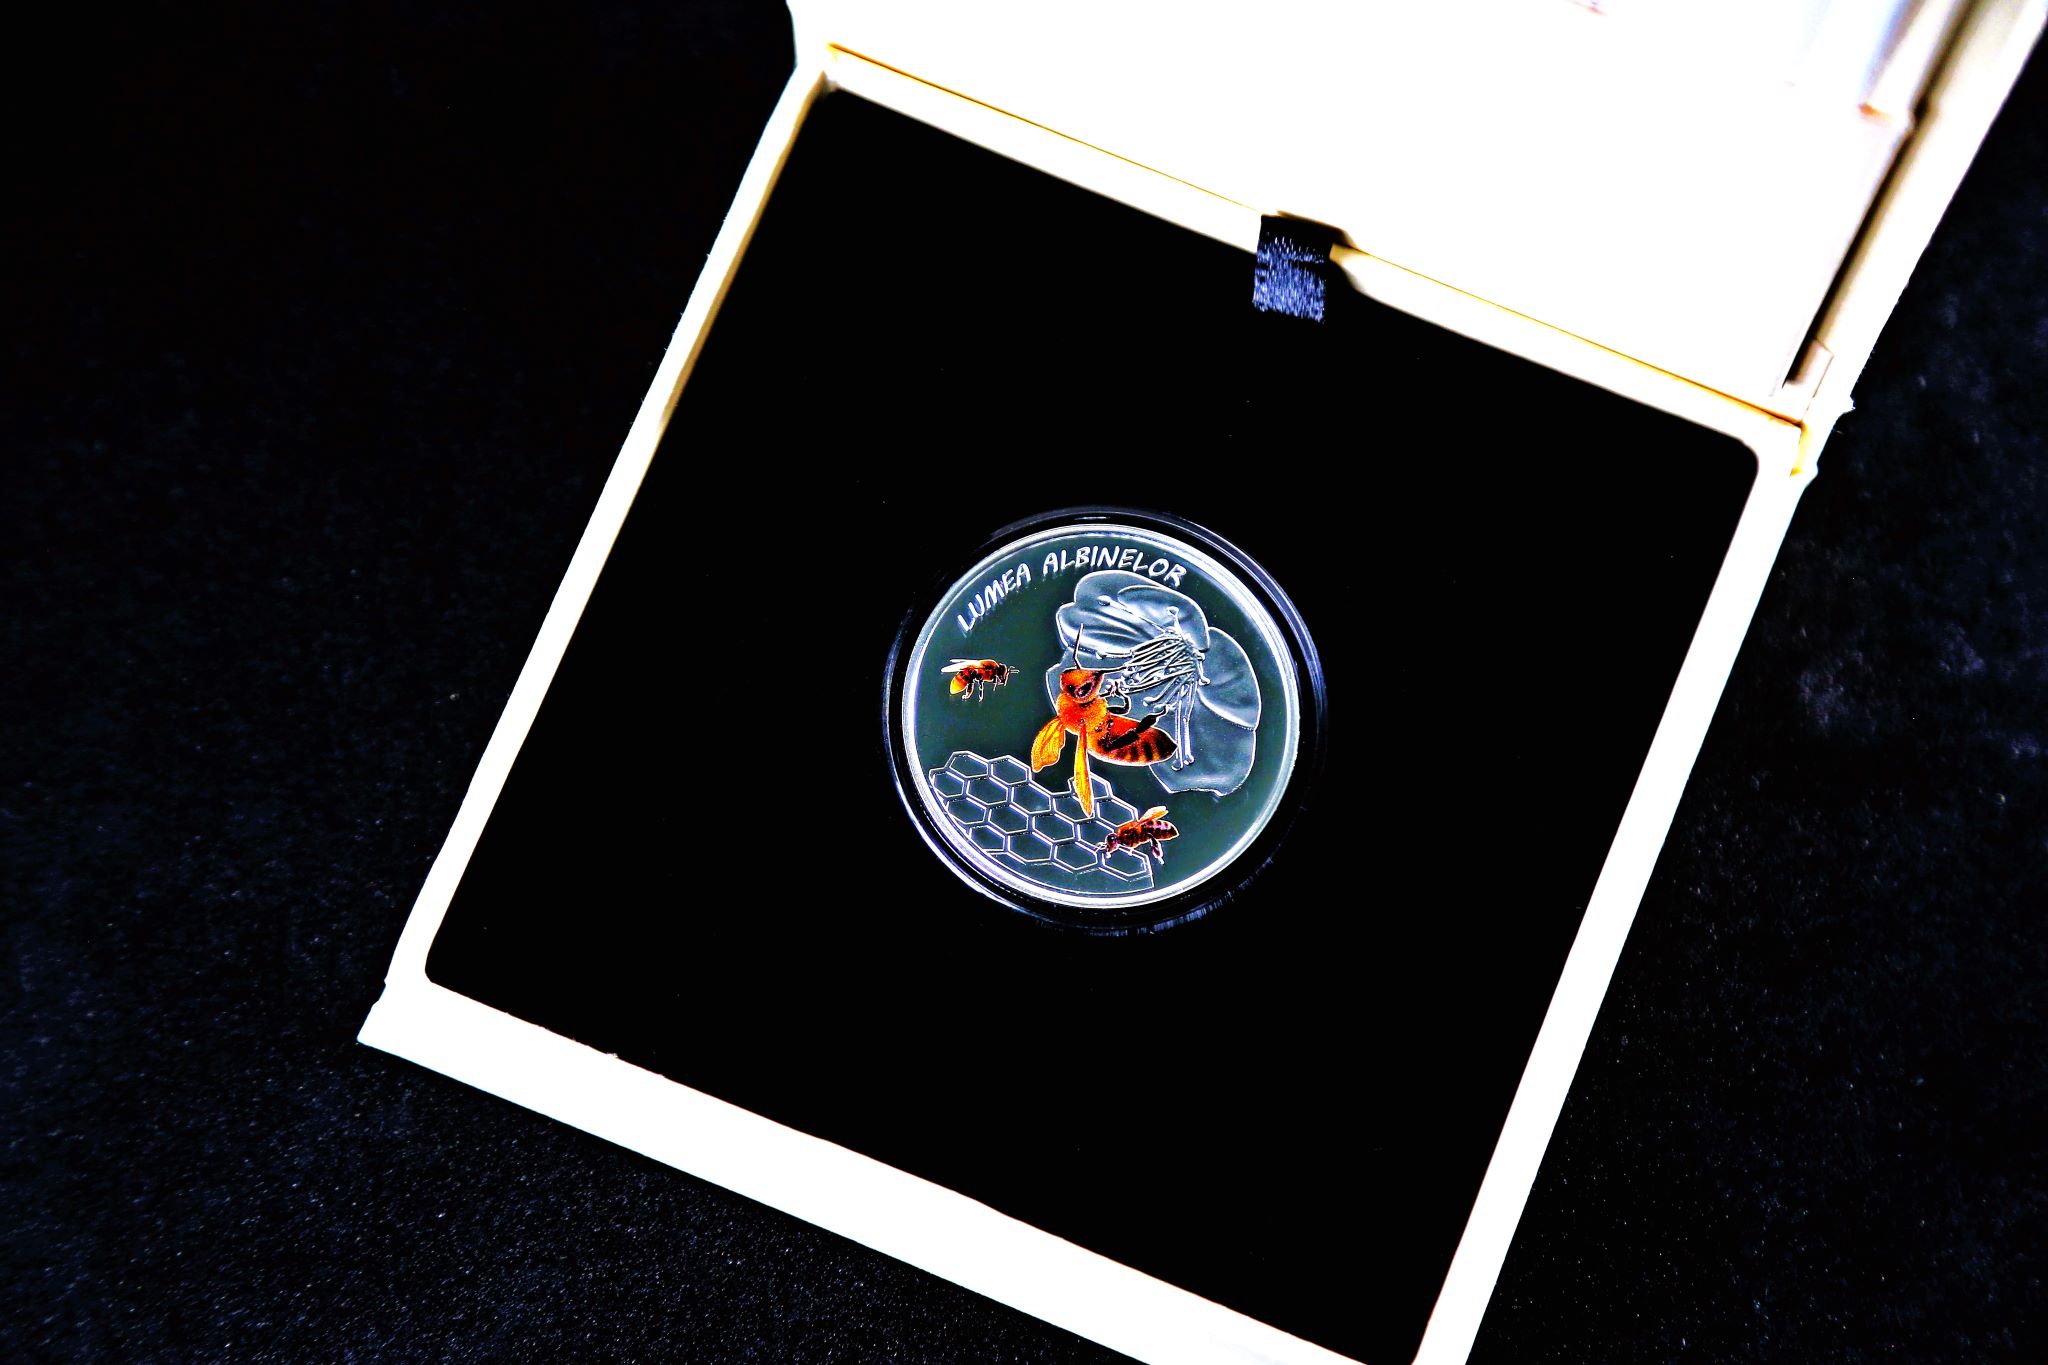 FOTO Noi monede comemorative, din aur și argint, puse în circulație: în total - 1 800 exemplare